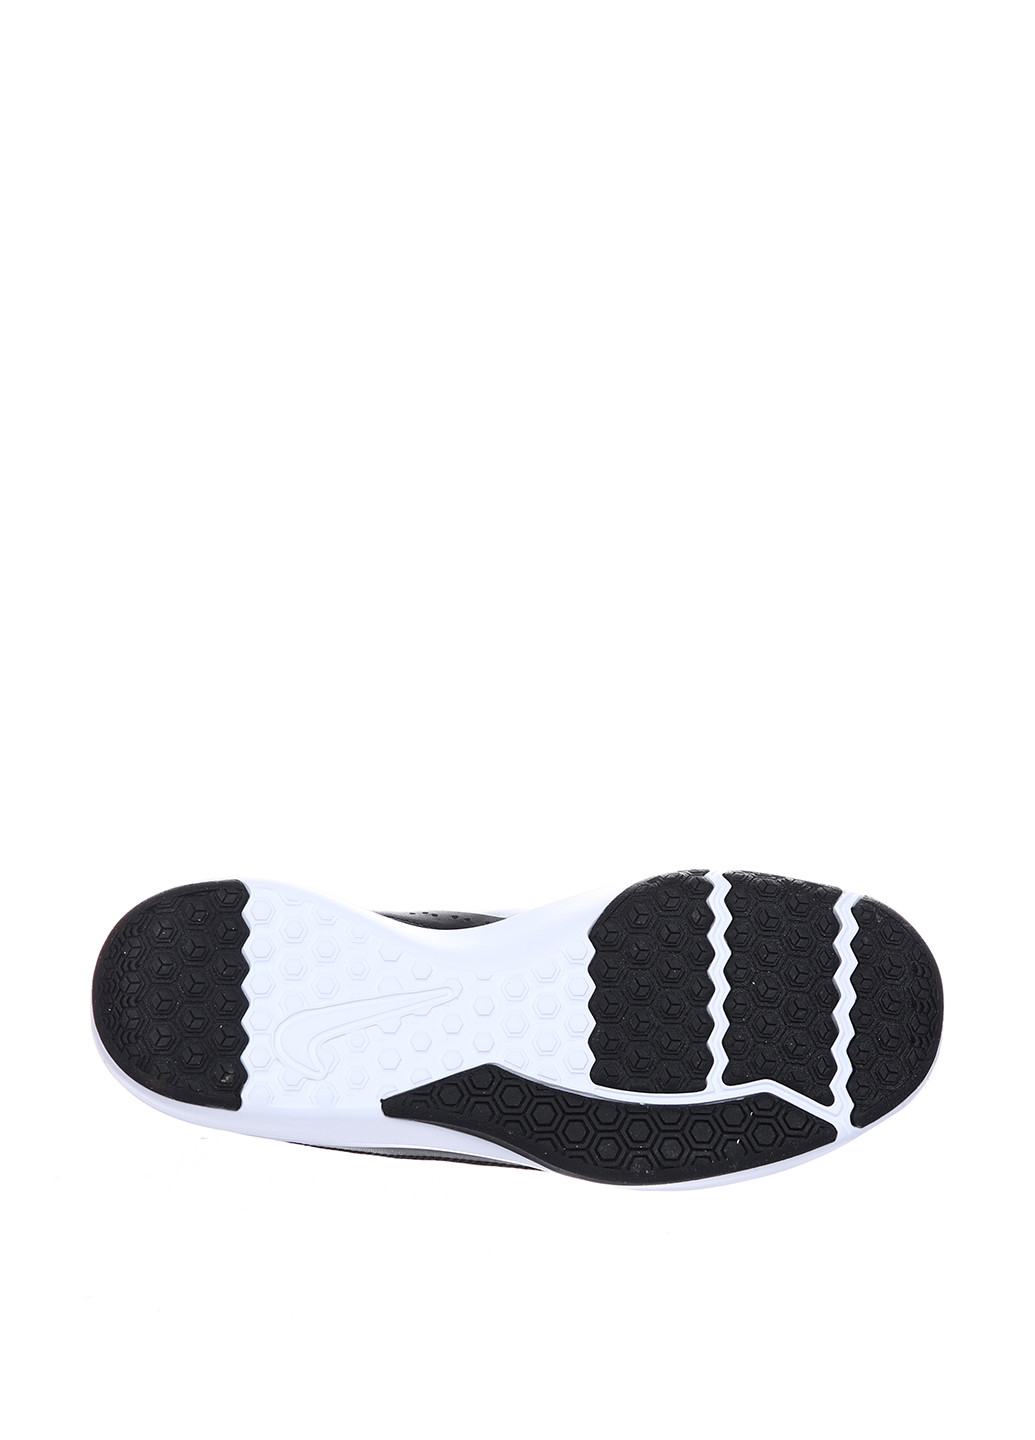 Черные всесезонные кроссовки Nike 924206-001